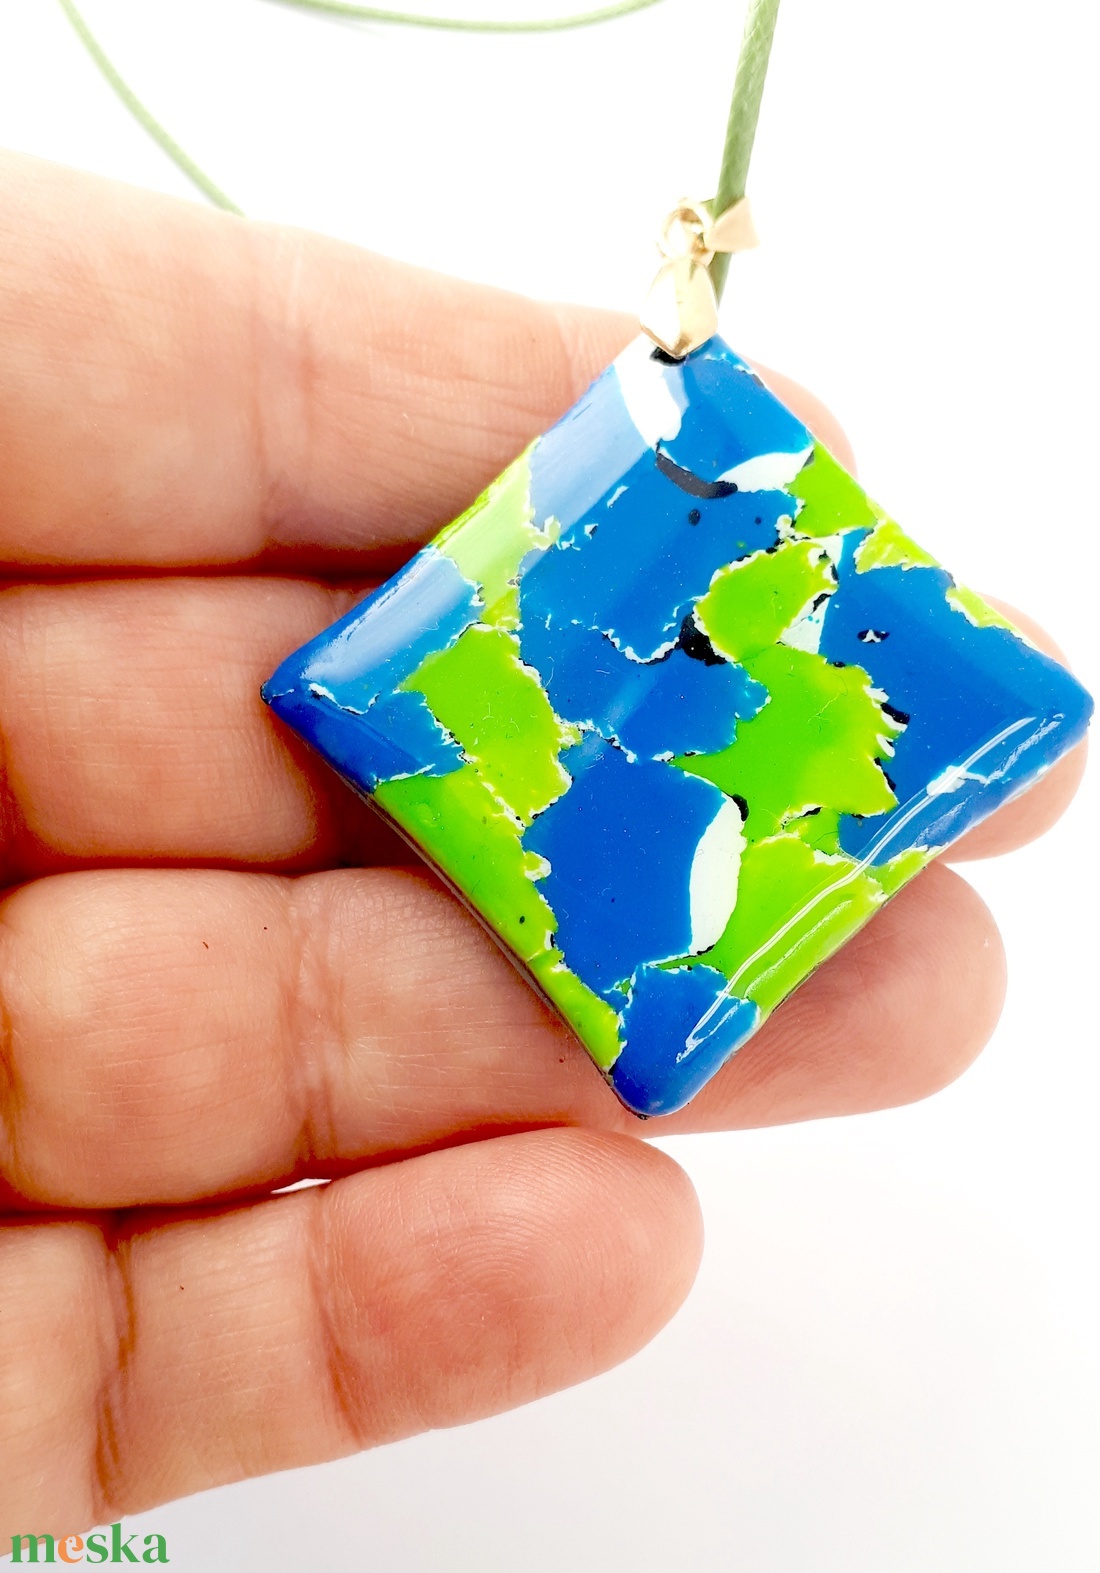 Kék-zöld medál, mozaikos ékszergyurma medál, színes, egyedi ajándék - ékszer - nyaklánc - medálos nyaklánc - Meska.hu